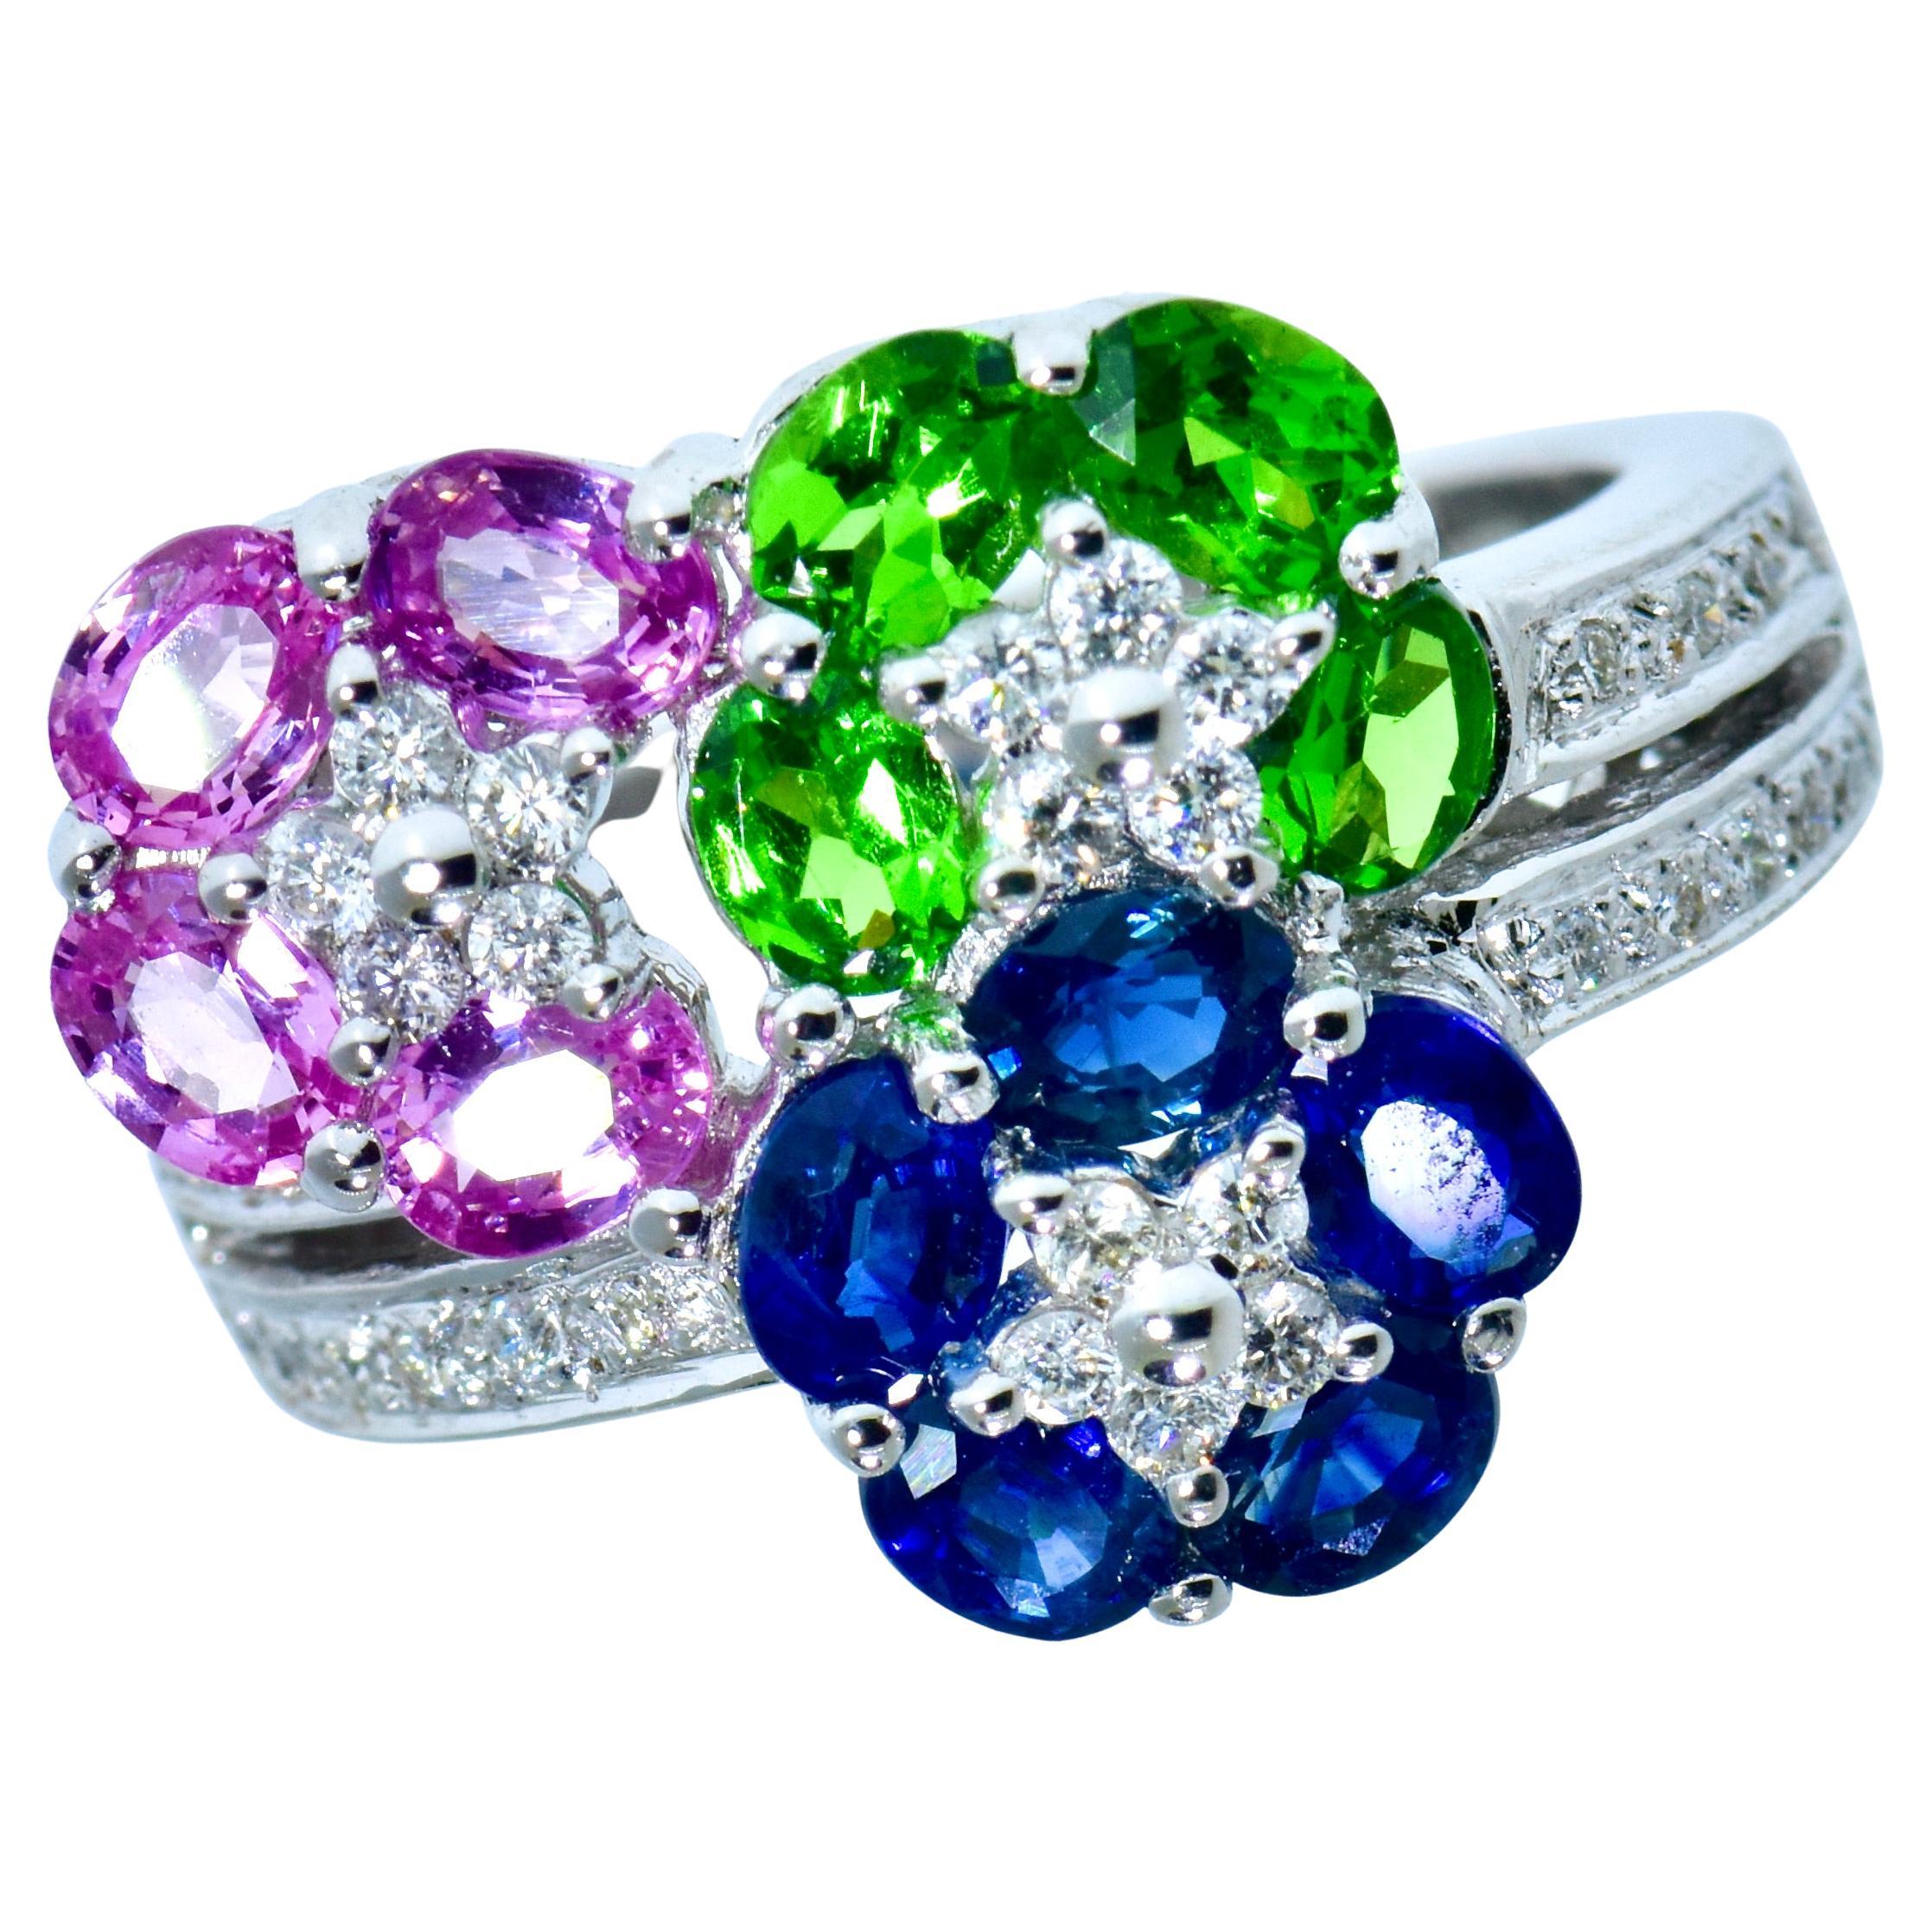 Rosa Saphire, blaue Saphire und leuchtend grüne Tsavorite mit weißen Diamanten im Brillantschliff bilden einen sehr schönen zeitgenössischen Ring der berühmten Firma LeVian.  Die  feine helle und saubere oval geschliffene Saphire (sowohl rosa als